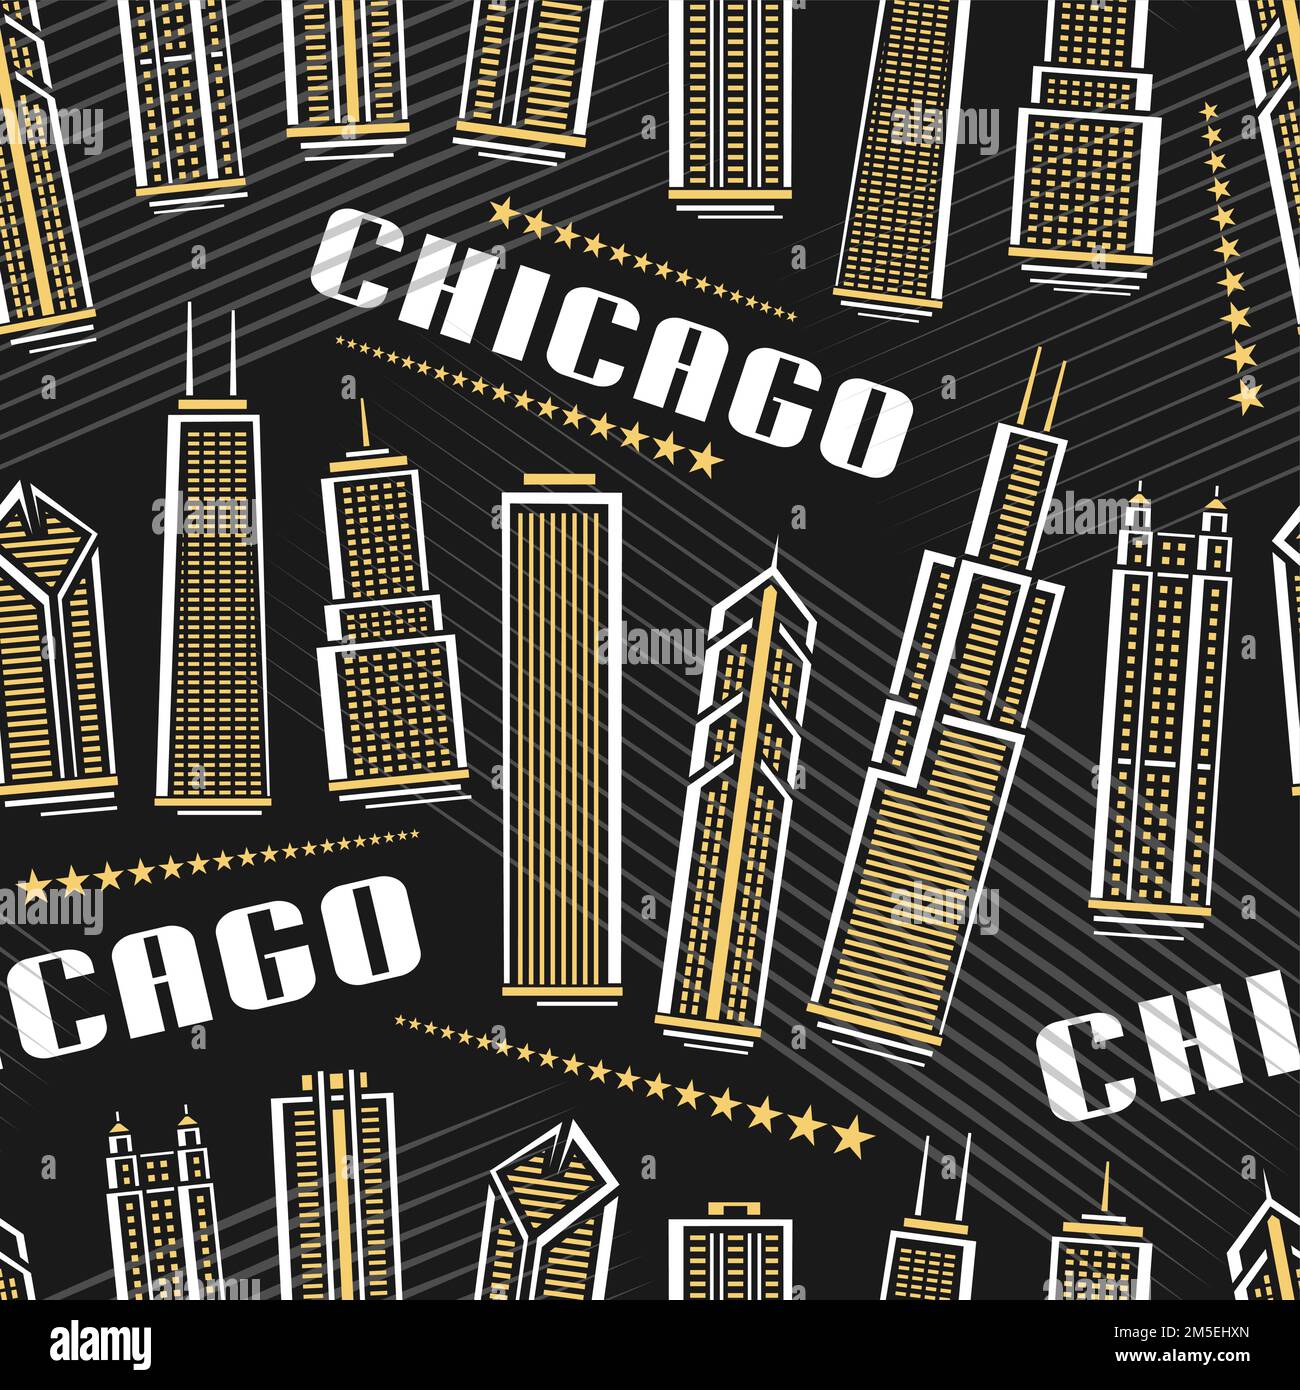 Vector Chicago Seamless Pattern, quadratischer Wiederholungshintergrund mit Illustration der berühmten chicagoer Stadtlandschaft auf dunklem Hintergrund für Geschenkpapier, Dekor Stock Vektor